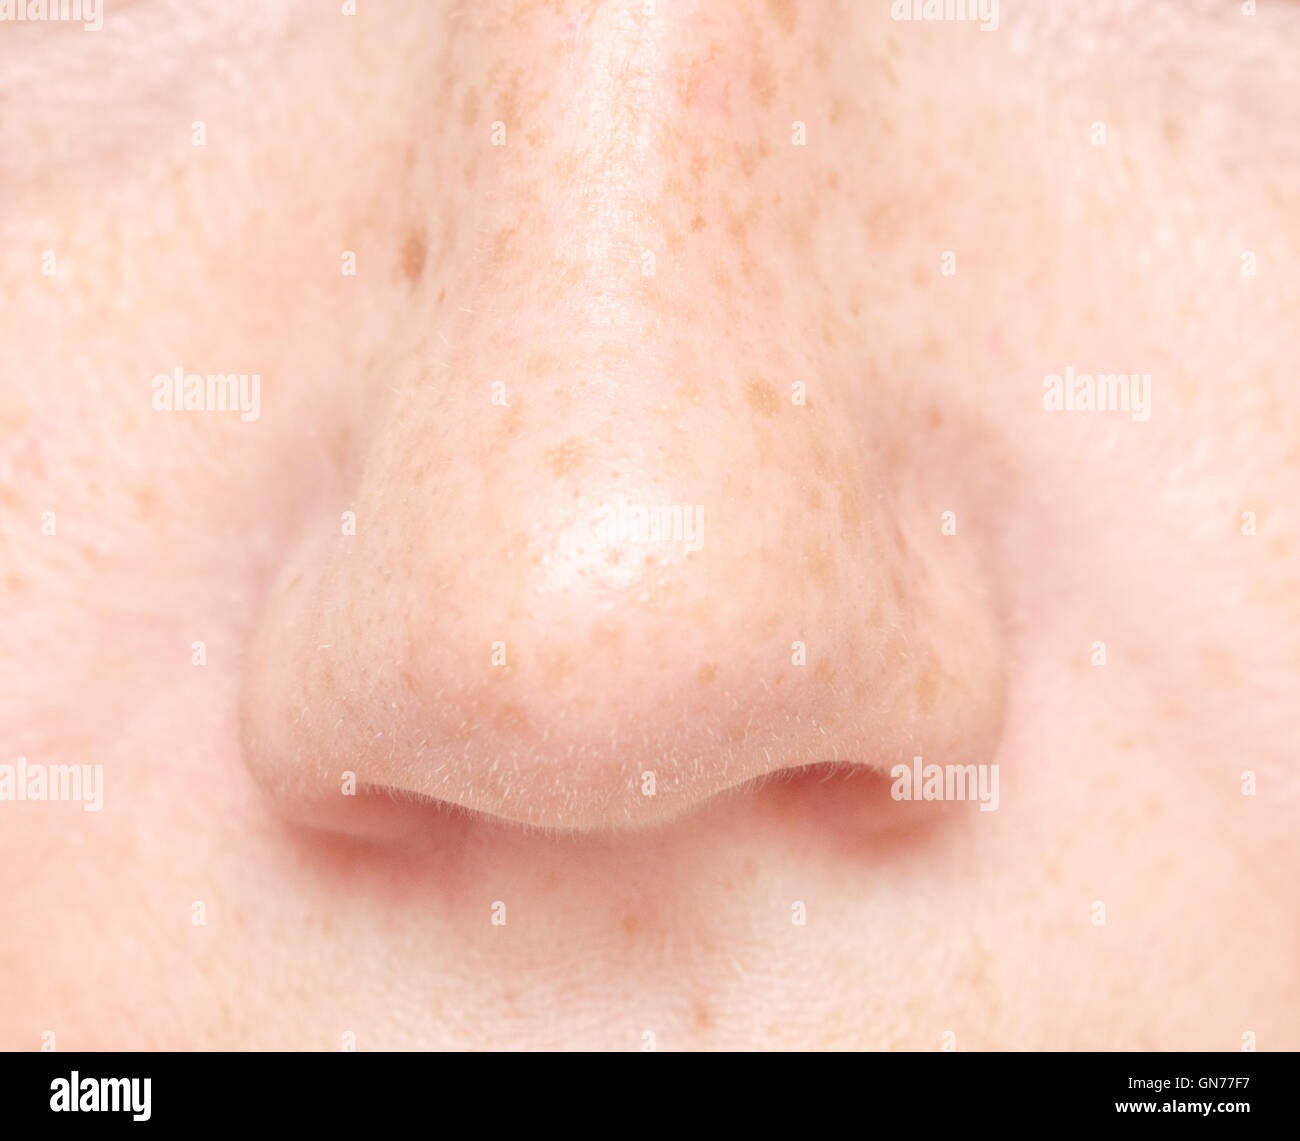 close up shot of human nose Stock Photo